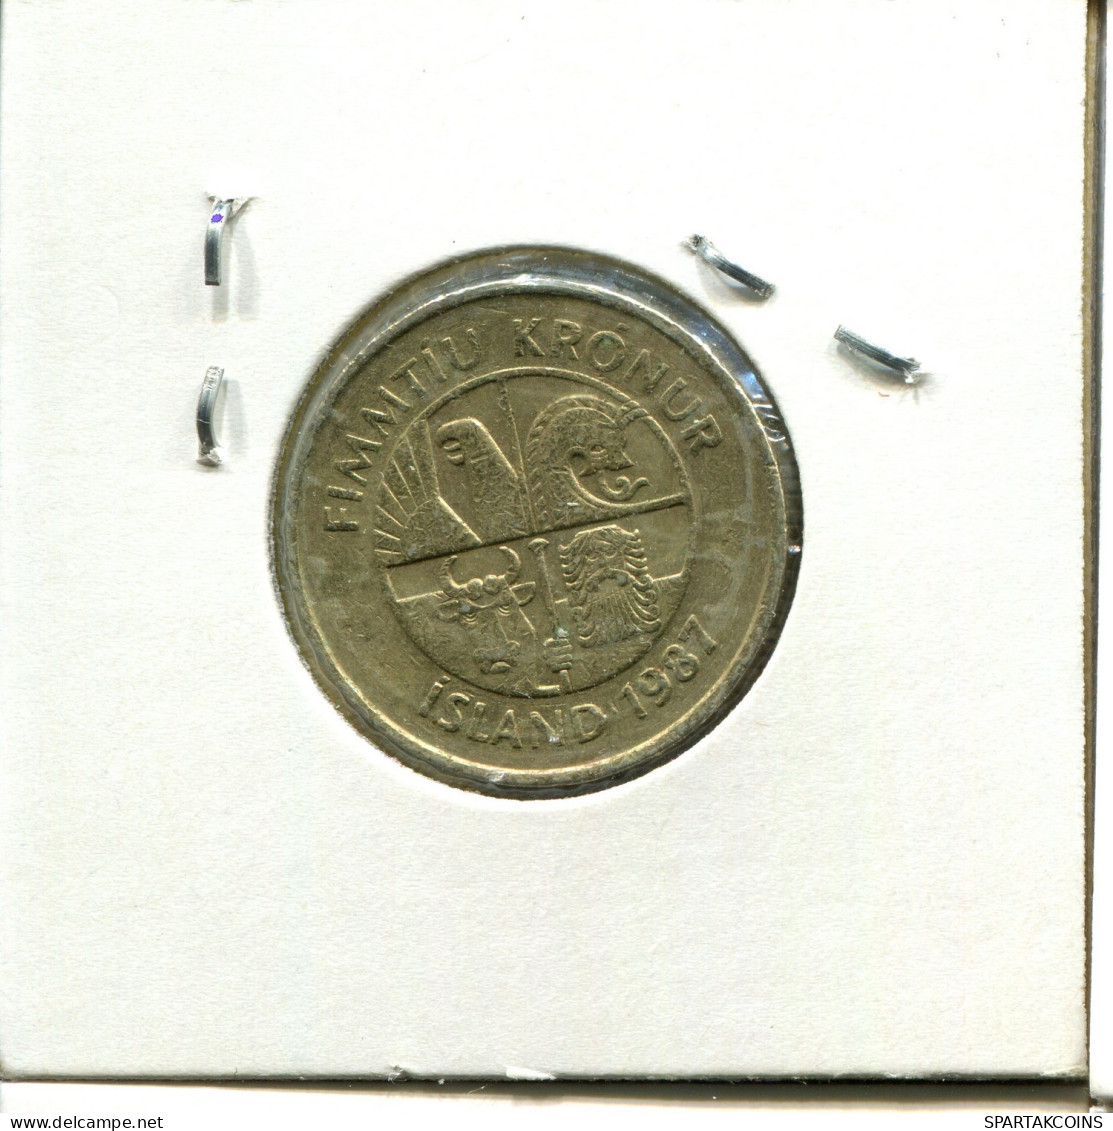 50 KRONUR 1987 ICELAND Coin #AY232.2.U.A - Island